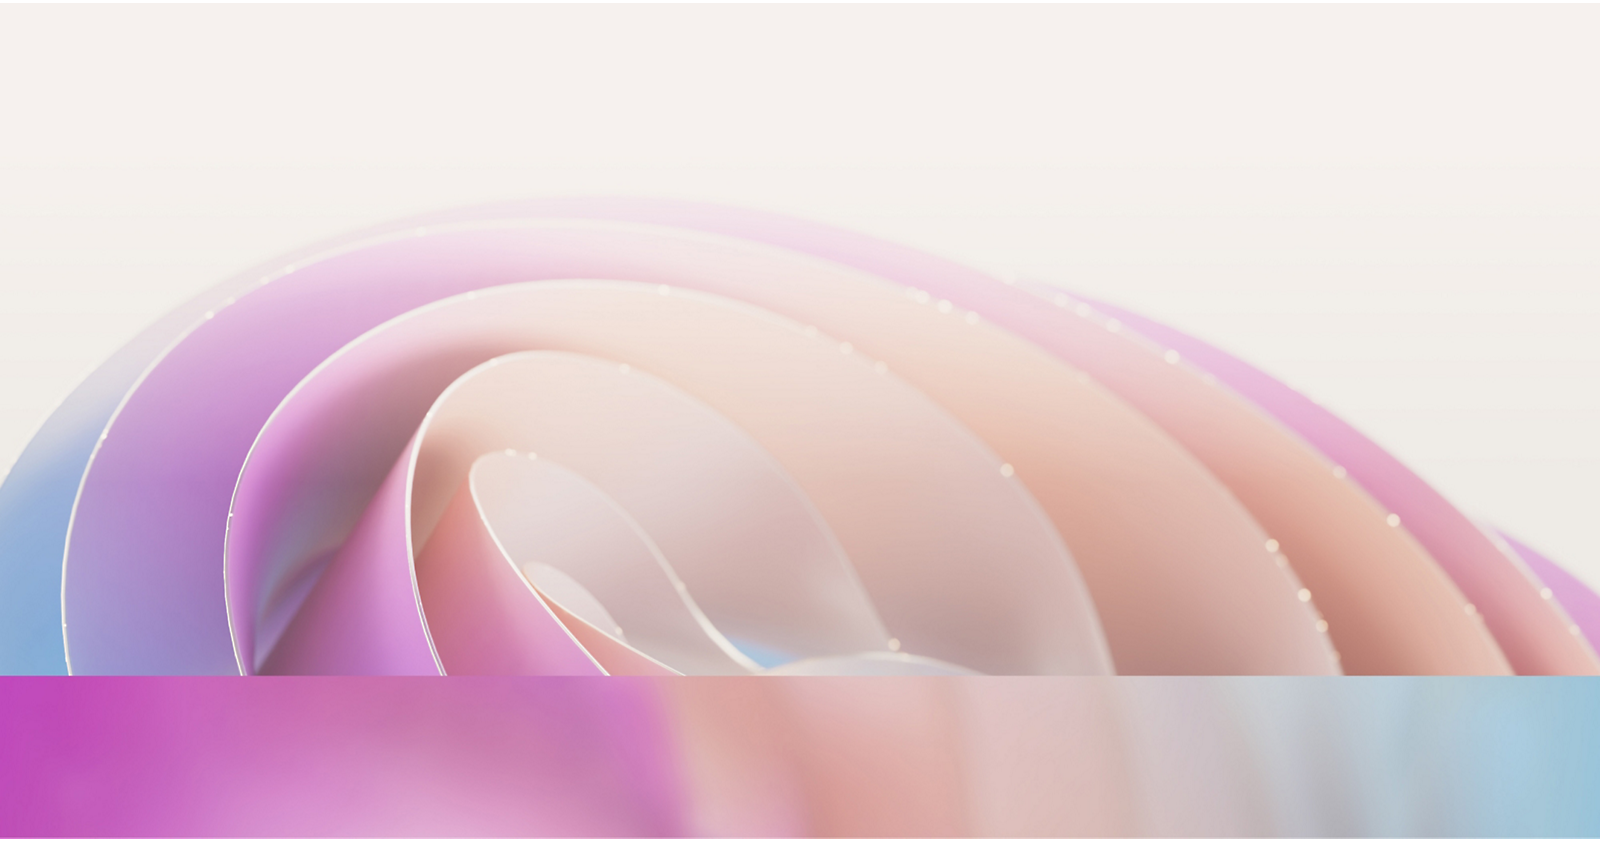 Image abstraite montrant des courbes colorées douces et superposées dans des tons pastel de rose, de violet et de bleu 